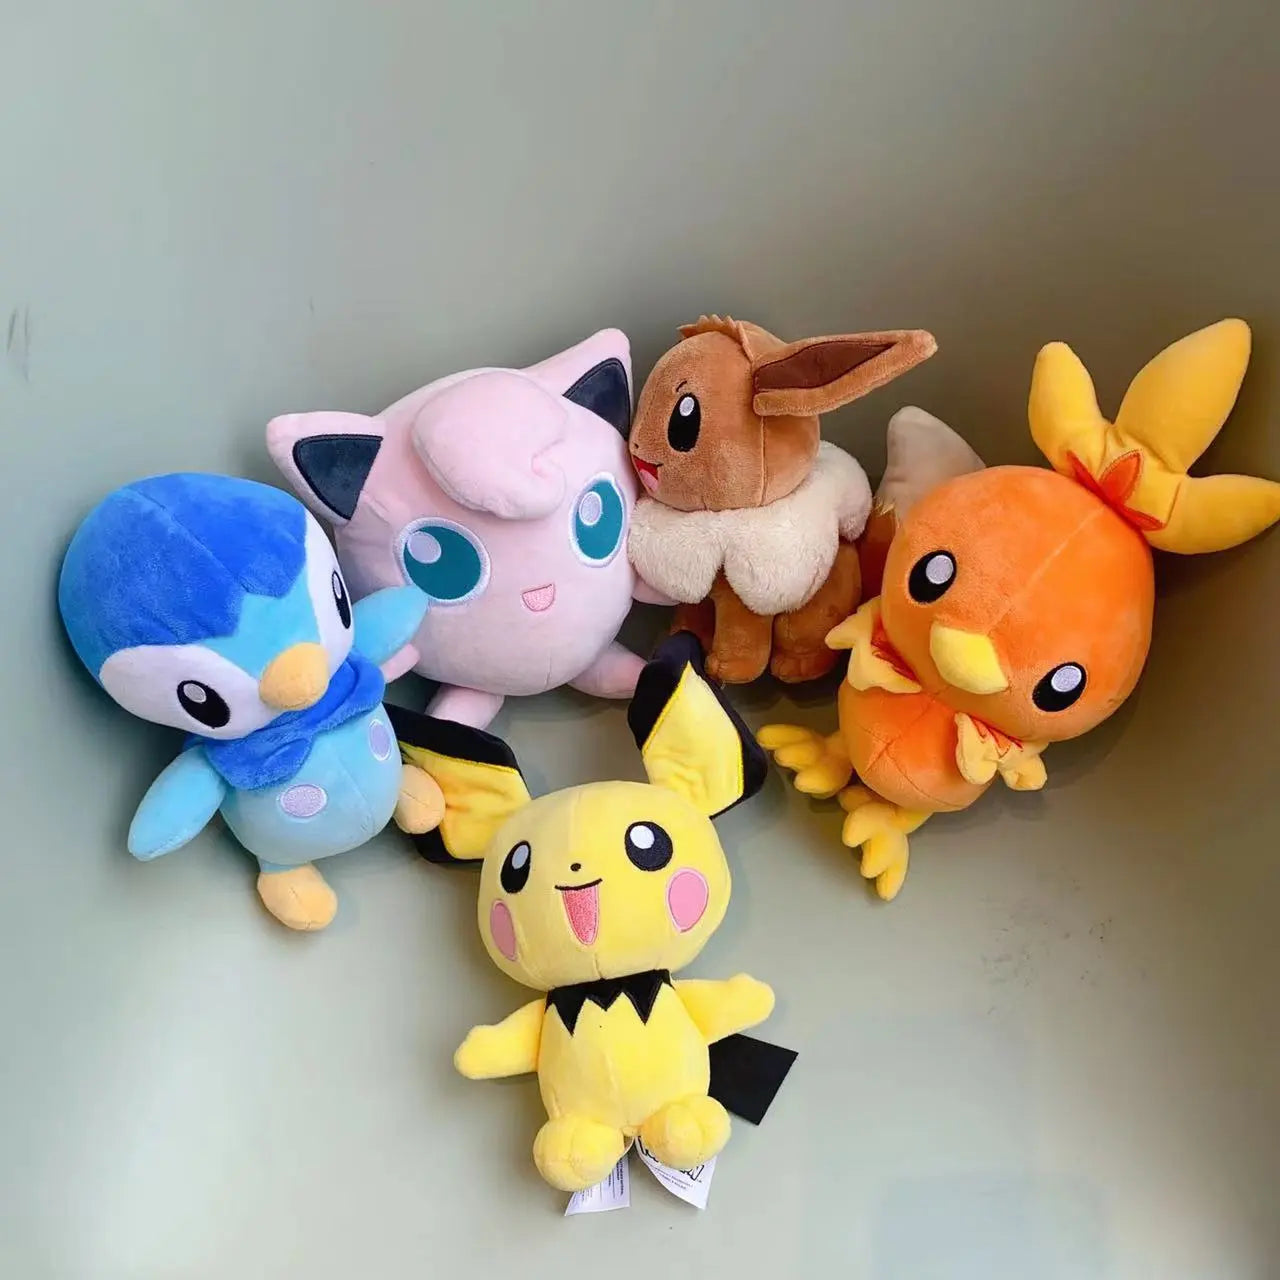 Pokemon Plush Toy Set: Leafeon, Espeon, Eevee, Charmander, Squirtle - 18-28cm